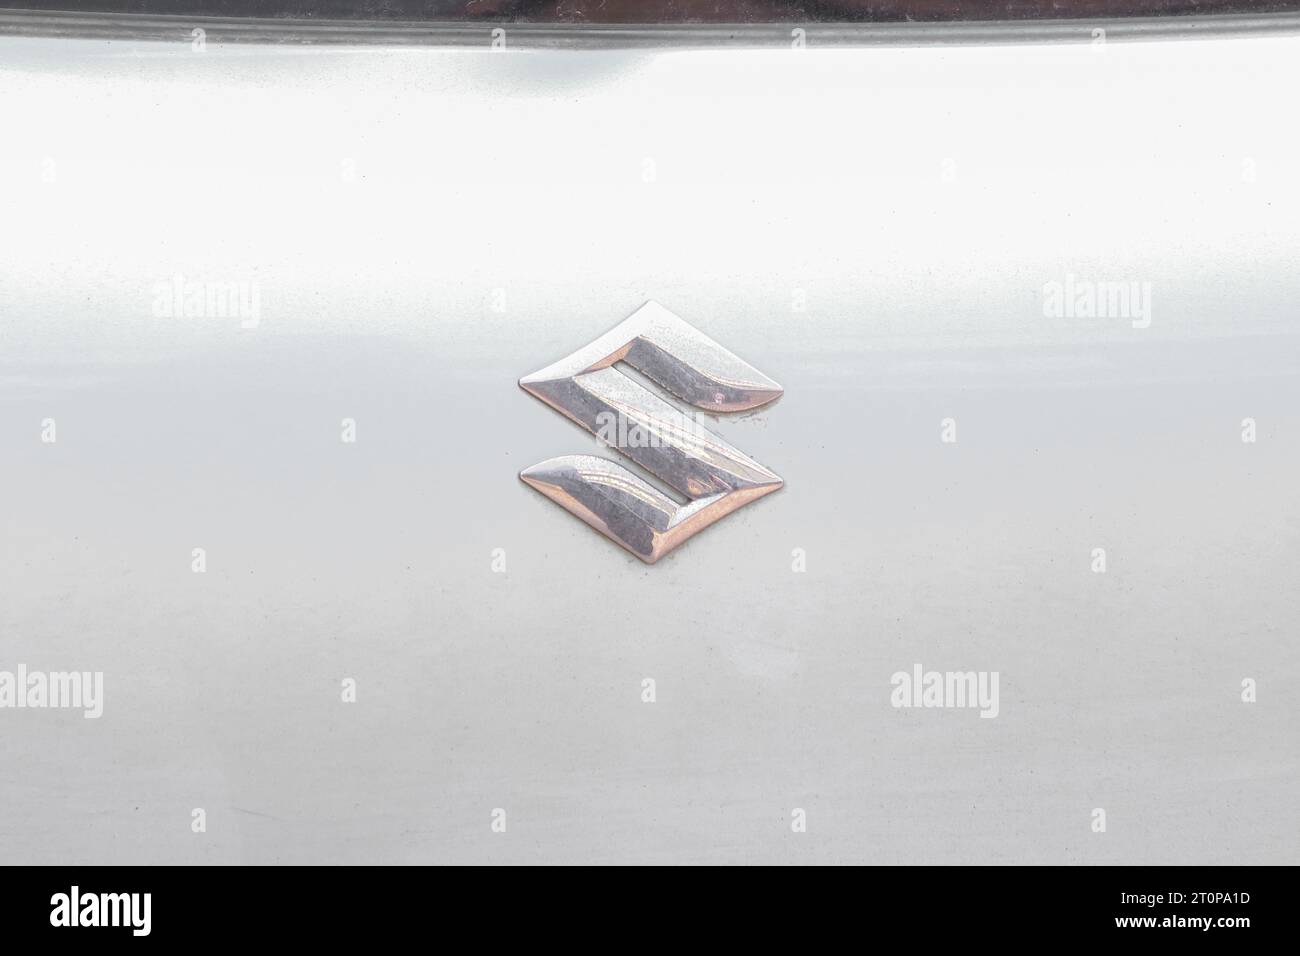 Suzuki metal logo on white car Stock Photo